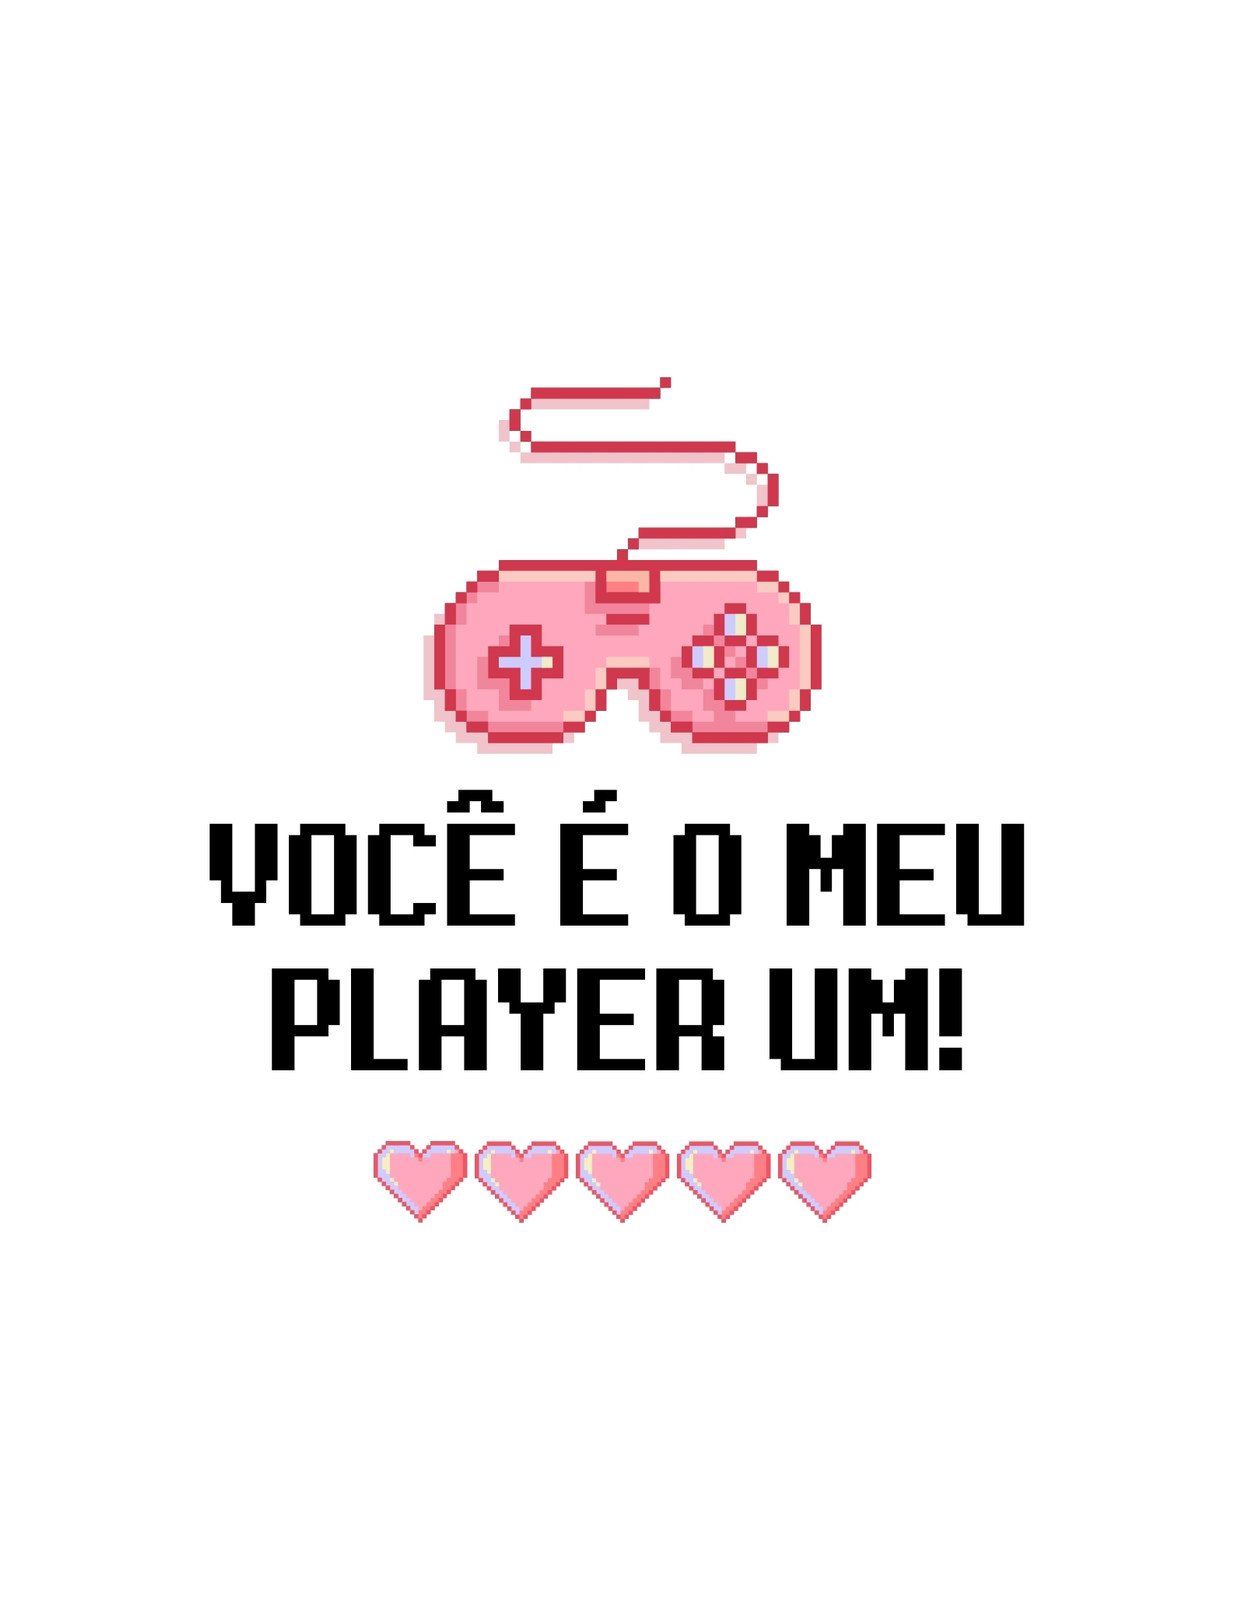 Cartaz com frase romântica em português do brasil estilo groovy